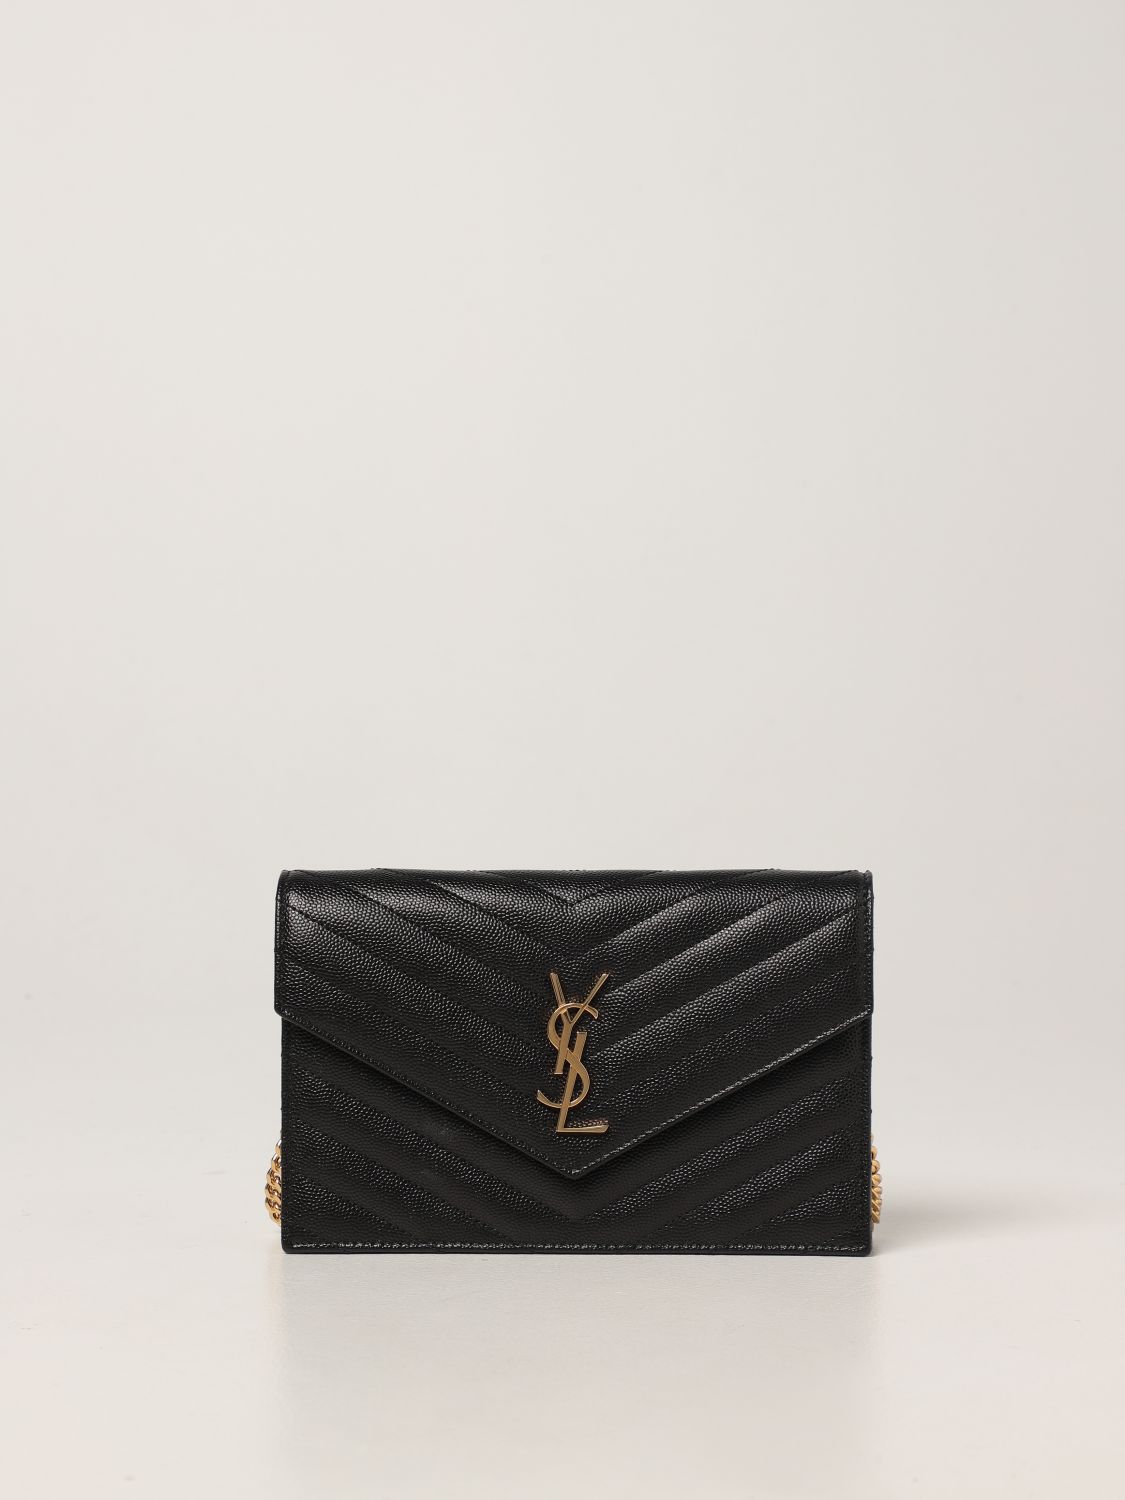 Mini bag Saint Laurent: Saint Laurent Monogram bag in grain the poudre leather black 1